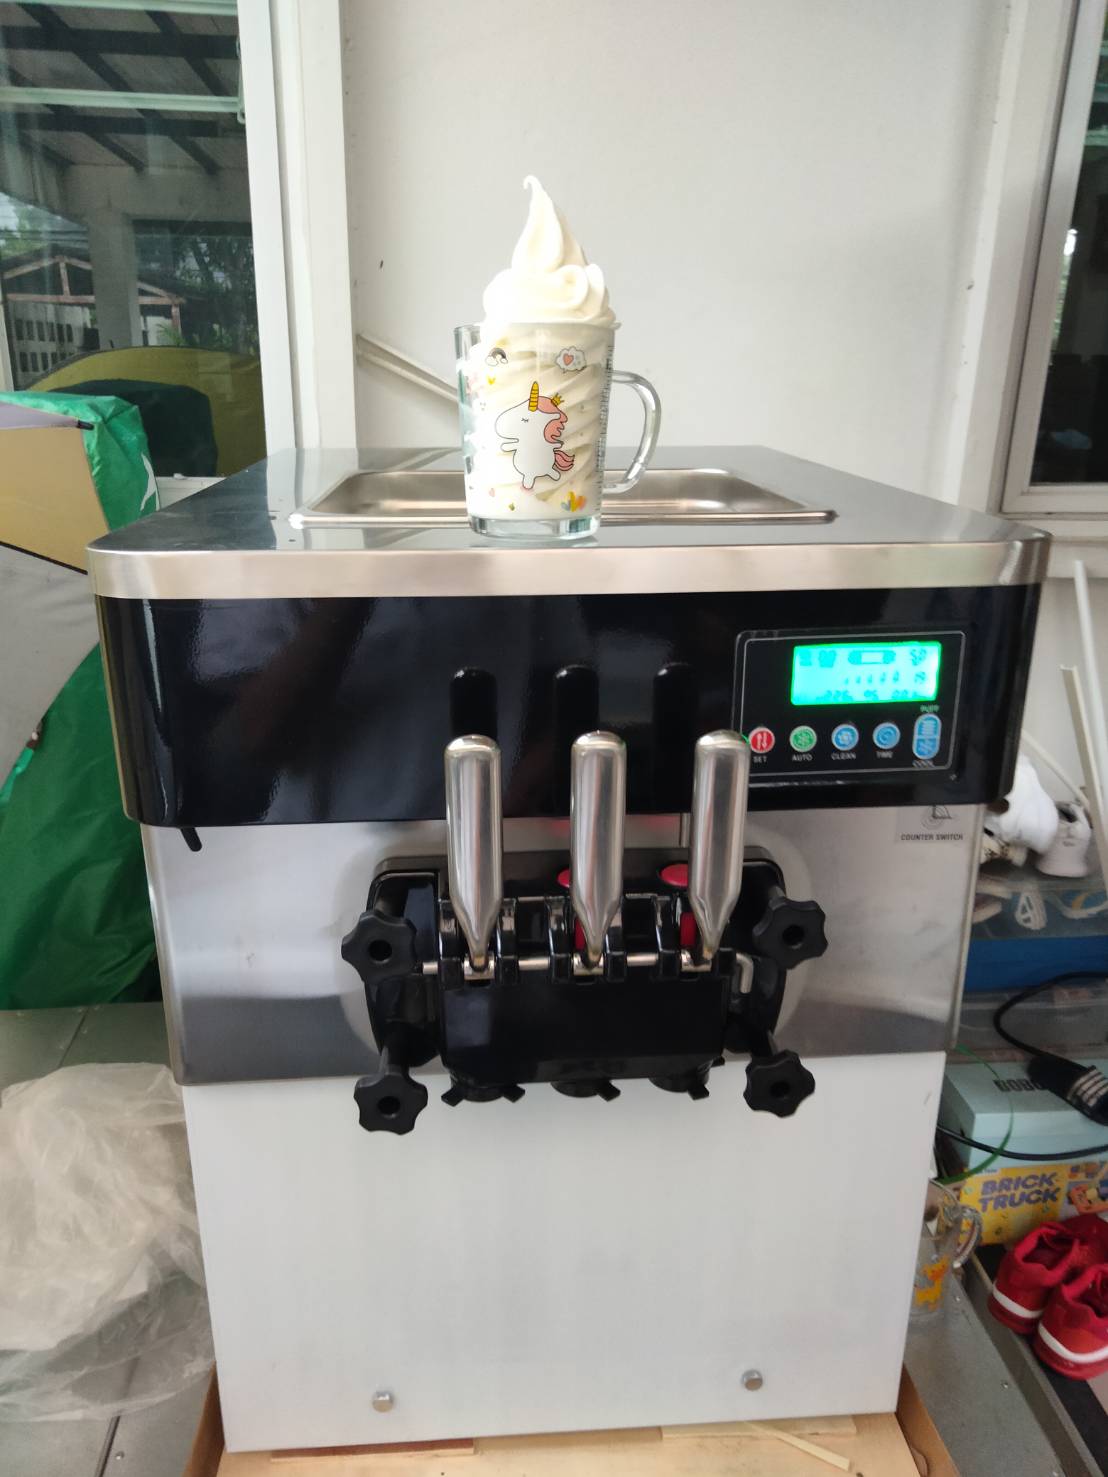 เครื่องทำไอศกรีมซอฟท์เสิร์ฟรุ่น BQL-825 ราคาประหยัด กำลังผลิต 250-300 โคน/ชม. รูปที่ 1